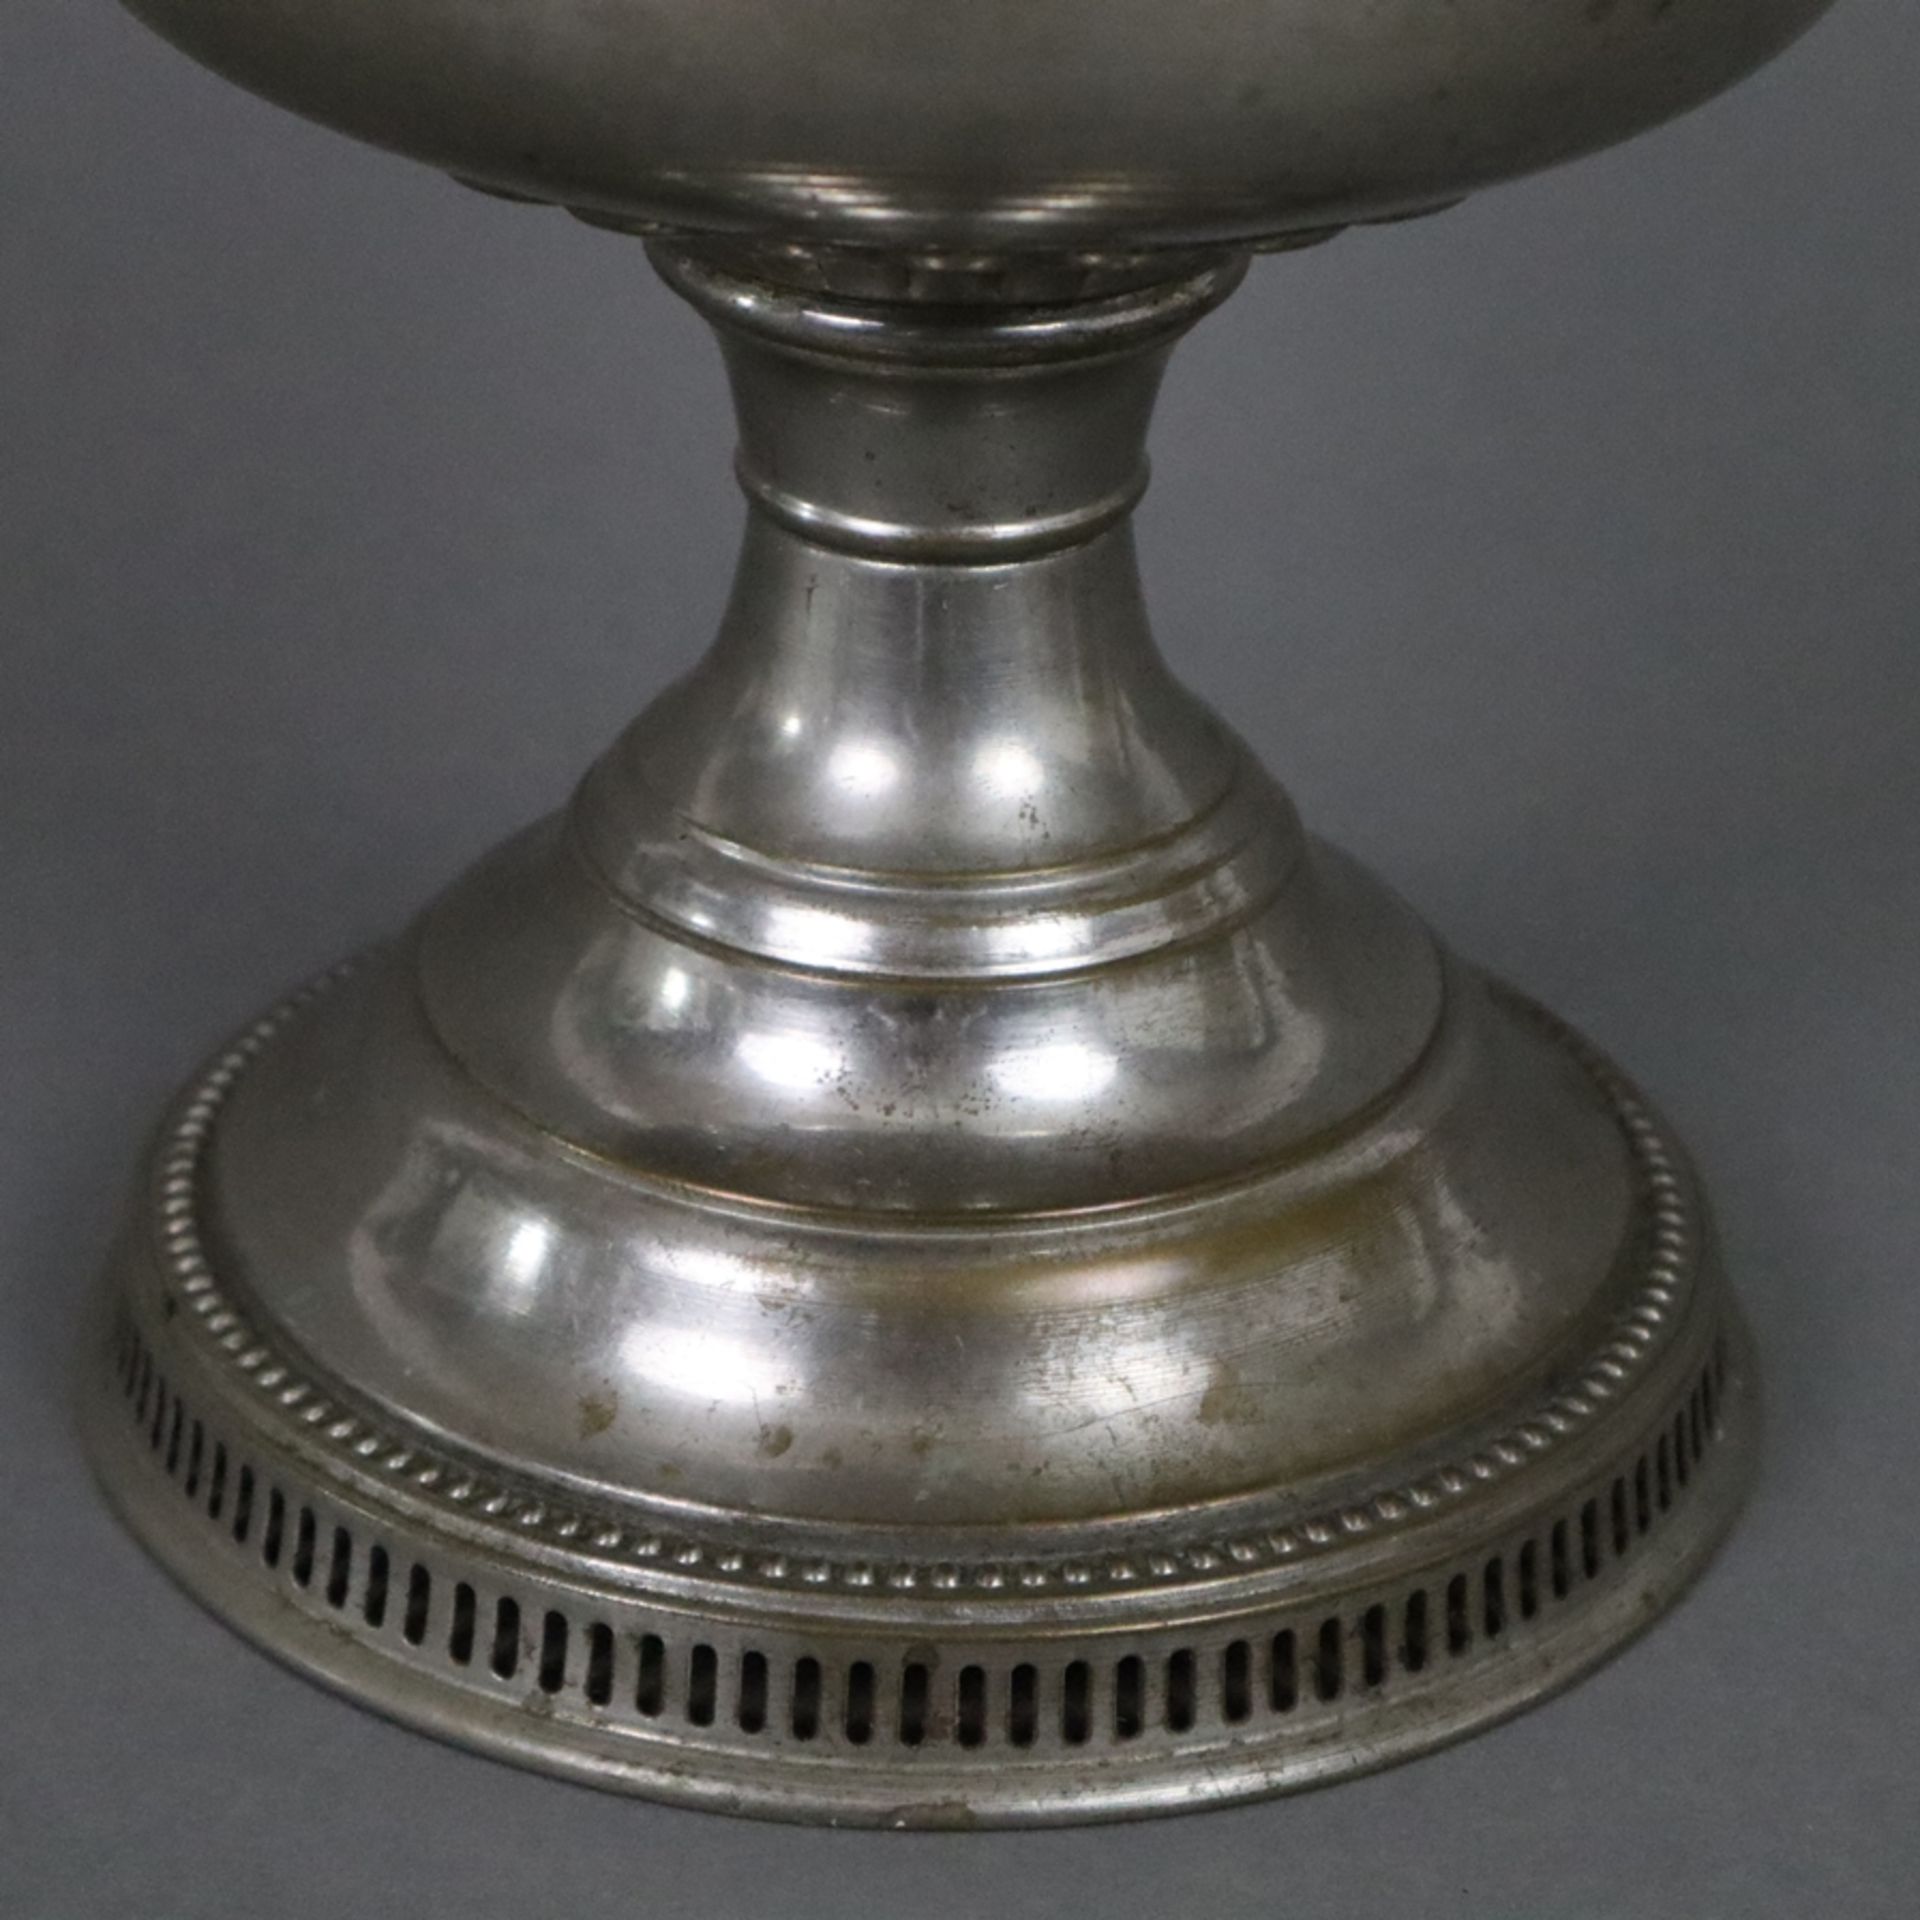 Petroleumlampe - Rayo, nach 1912, Hersteller Bradley & Hubbard/USA, Messing vernickelt, Glaszylinde - Bild 5 aus 6